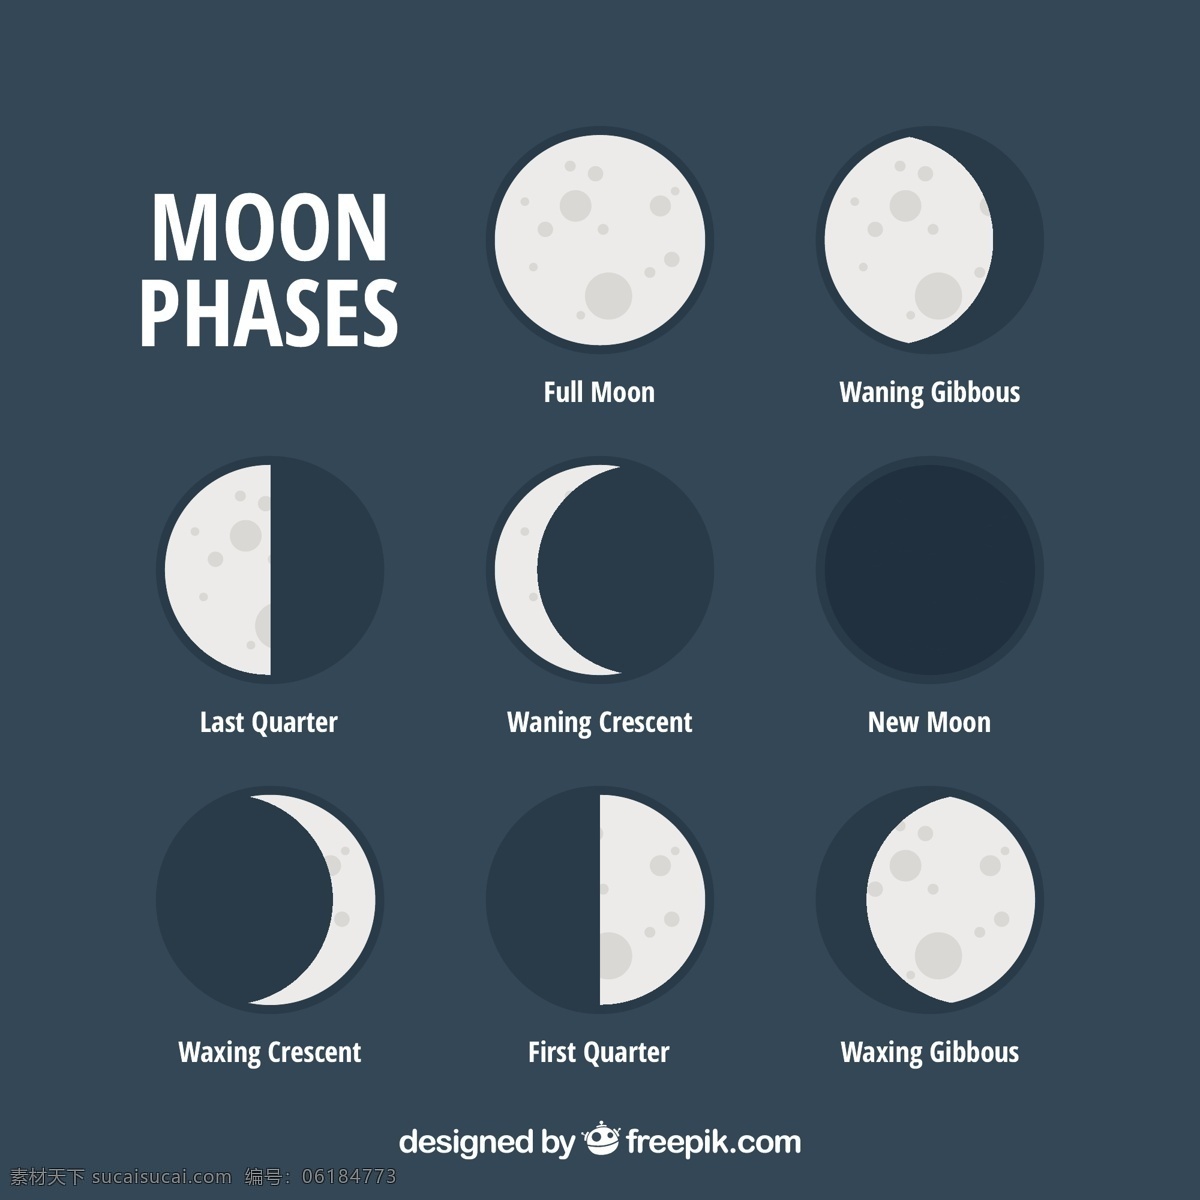 月相集 日历 天空 月亮 数字 时间 平面 夜晚 平面设计 时间表 规划师 夜空 宇宙 年 季节 占星术 月 满月 周计划者 集